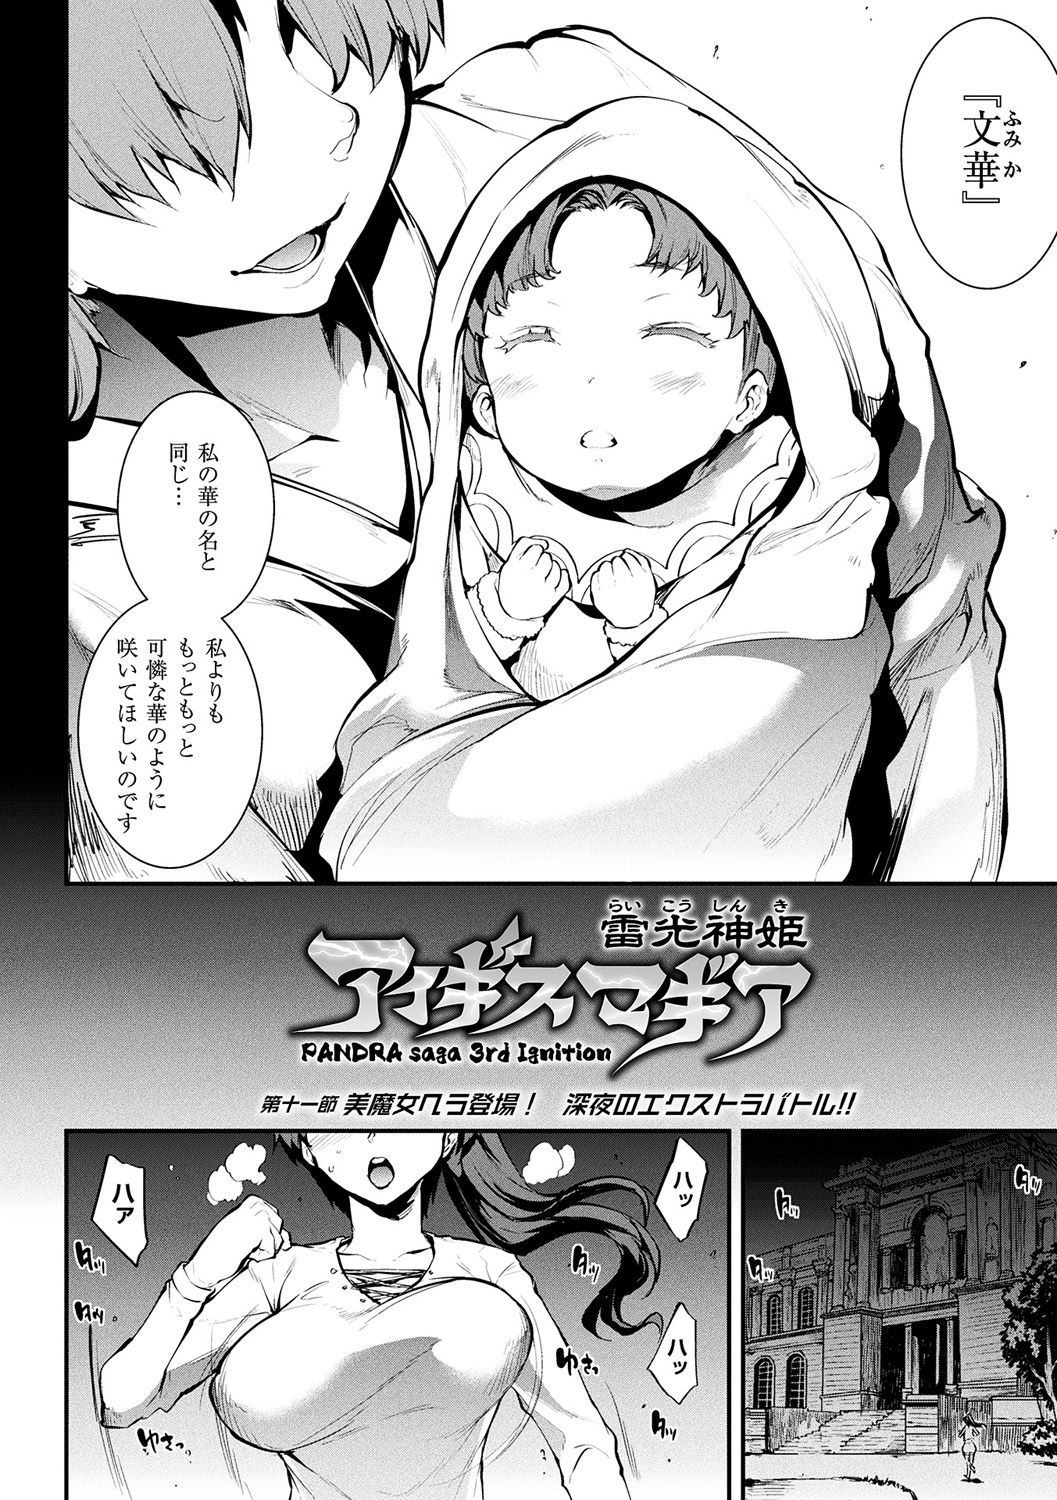 ライコウシンキイギスマギアII-PANDRA saga3回目のイグニッション-+デジタルスペシャルポスター